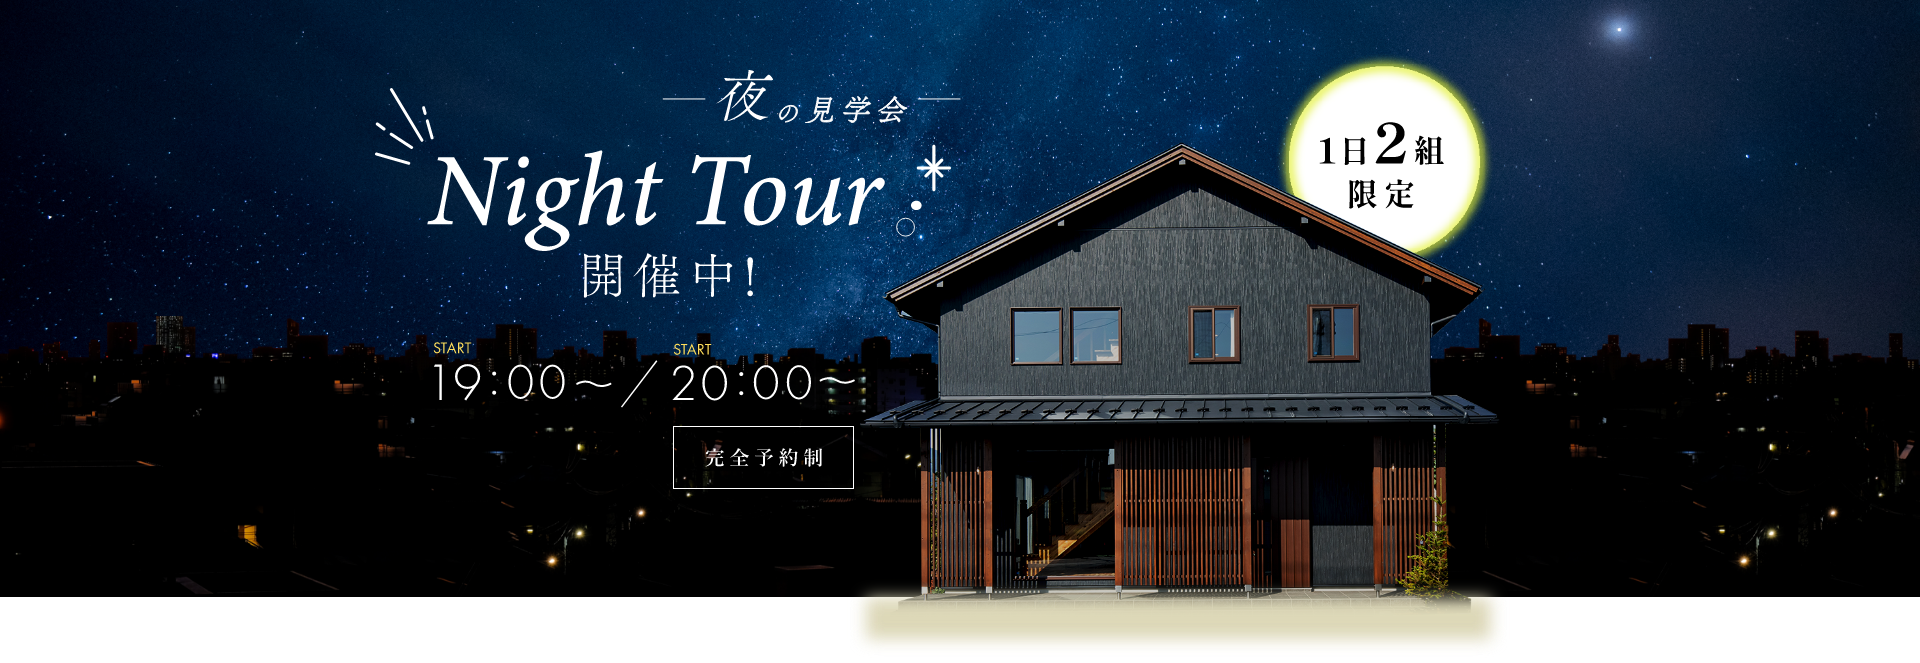 1日2組 限定 夜の見学会 Night Tour 開催中 19:00 スタート / 20:00 スタート